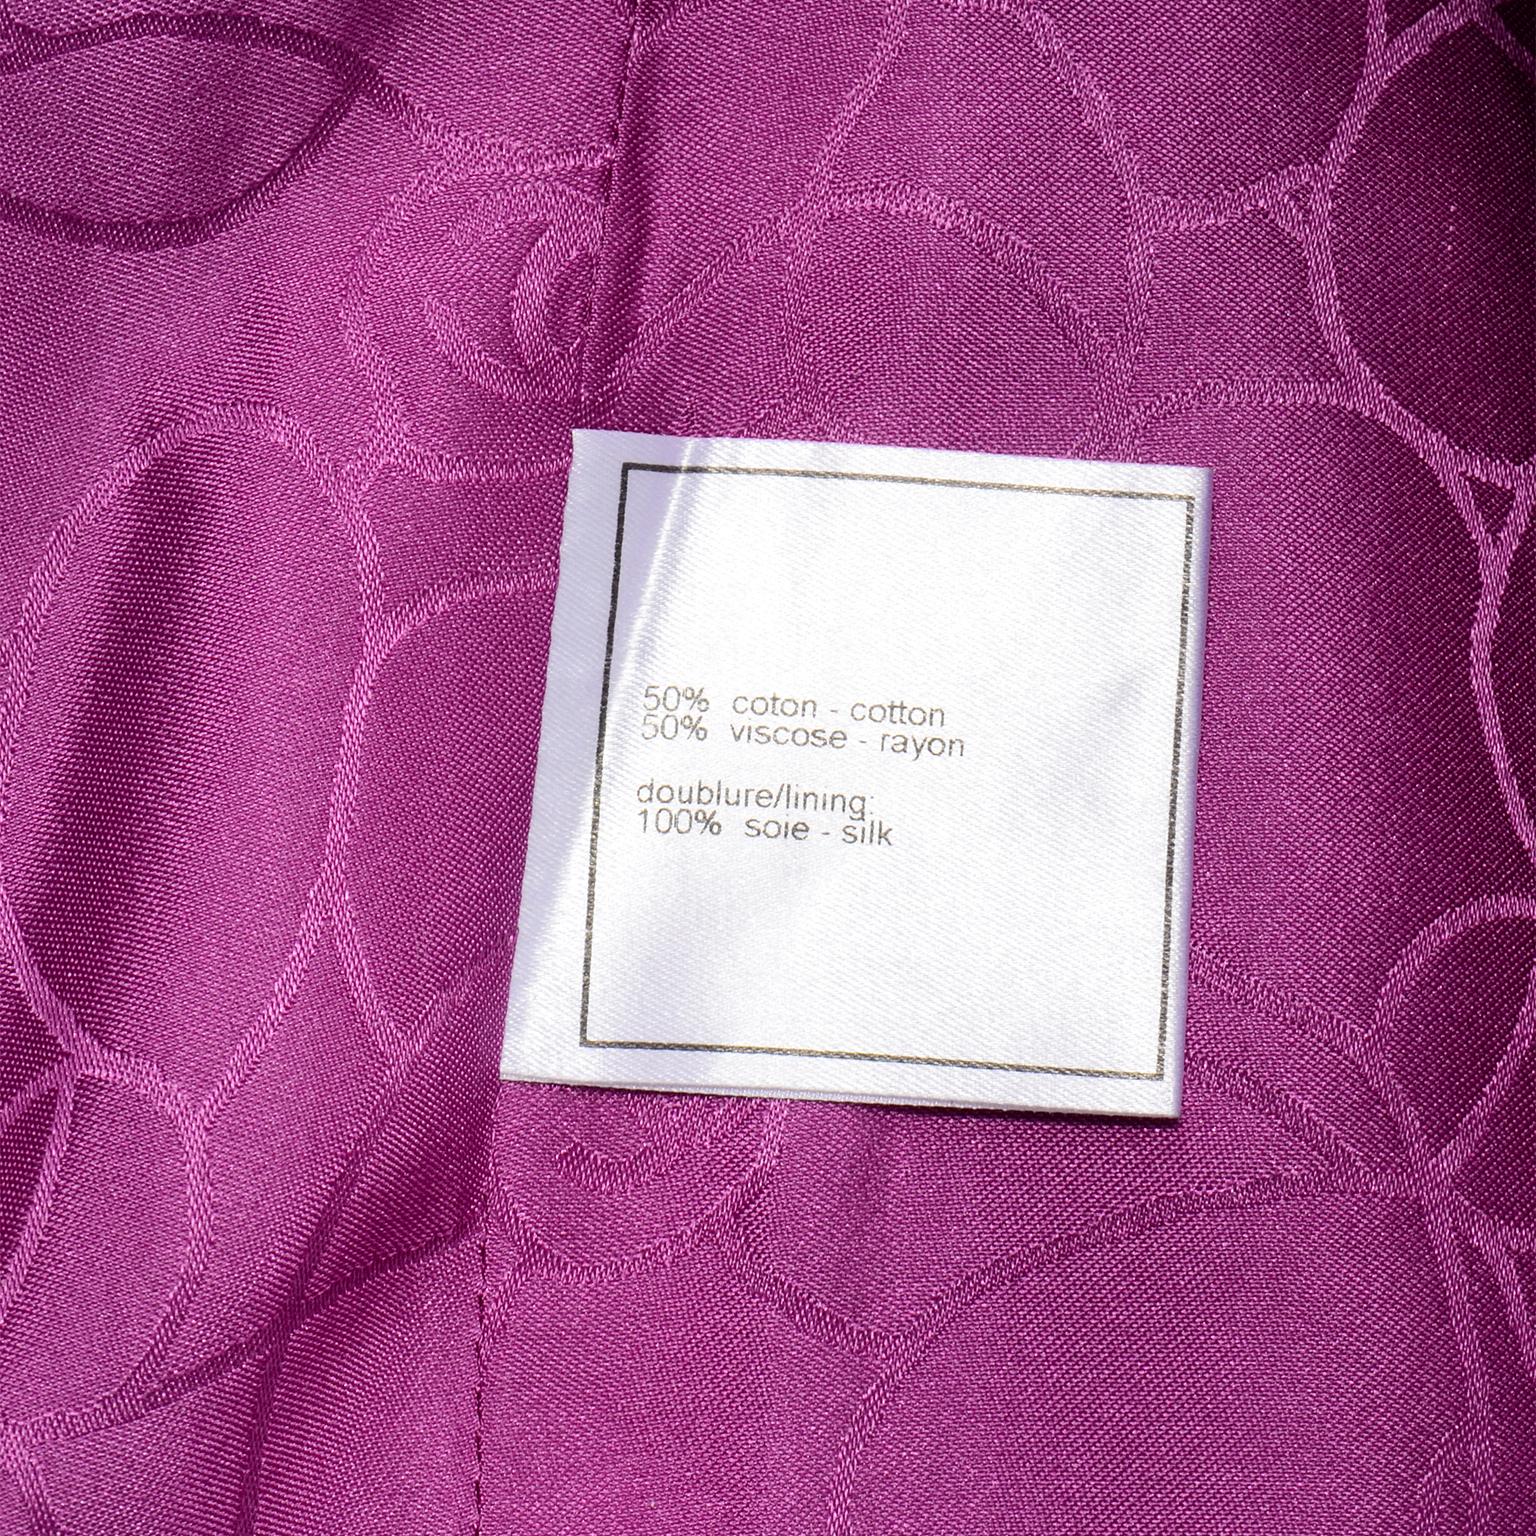 Chanel 2001 Magenta Purple Metallic Cropped Jacket w Asymmetrical Zipper For Sale 5